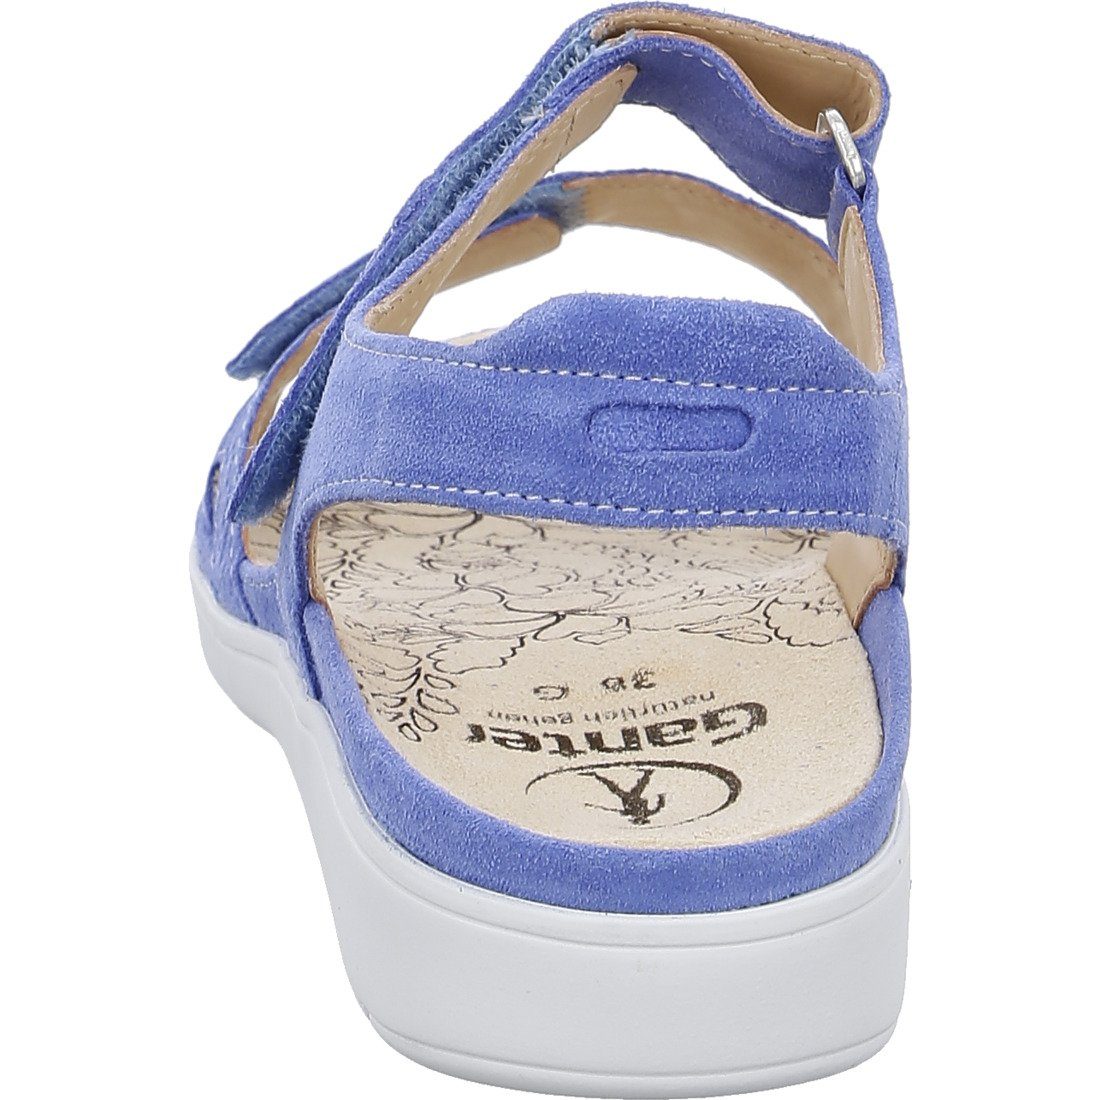 Ganter Ganter Schuhe, Sandalette blau Damen - 045840 Velours Gina Sandalette